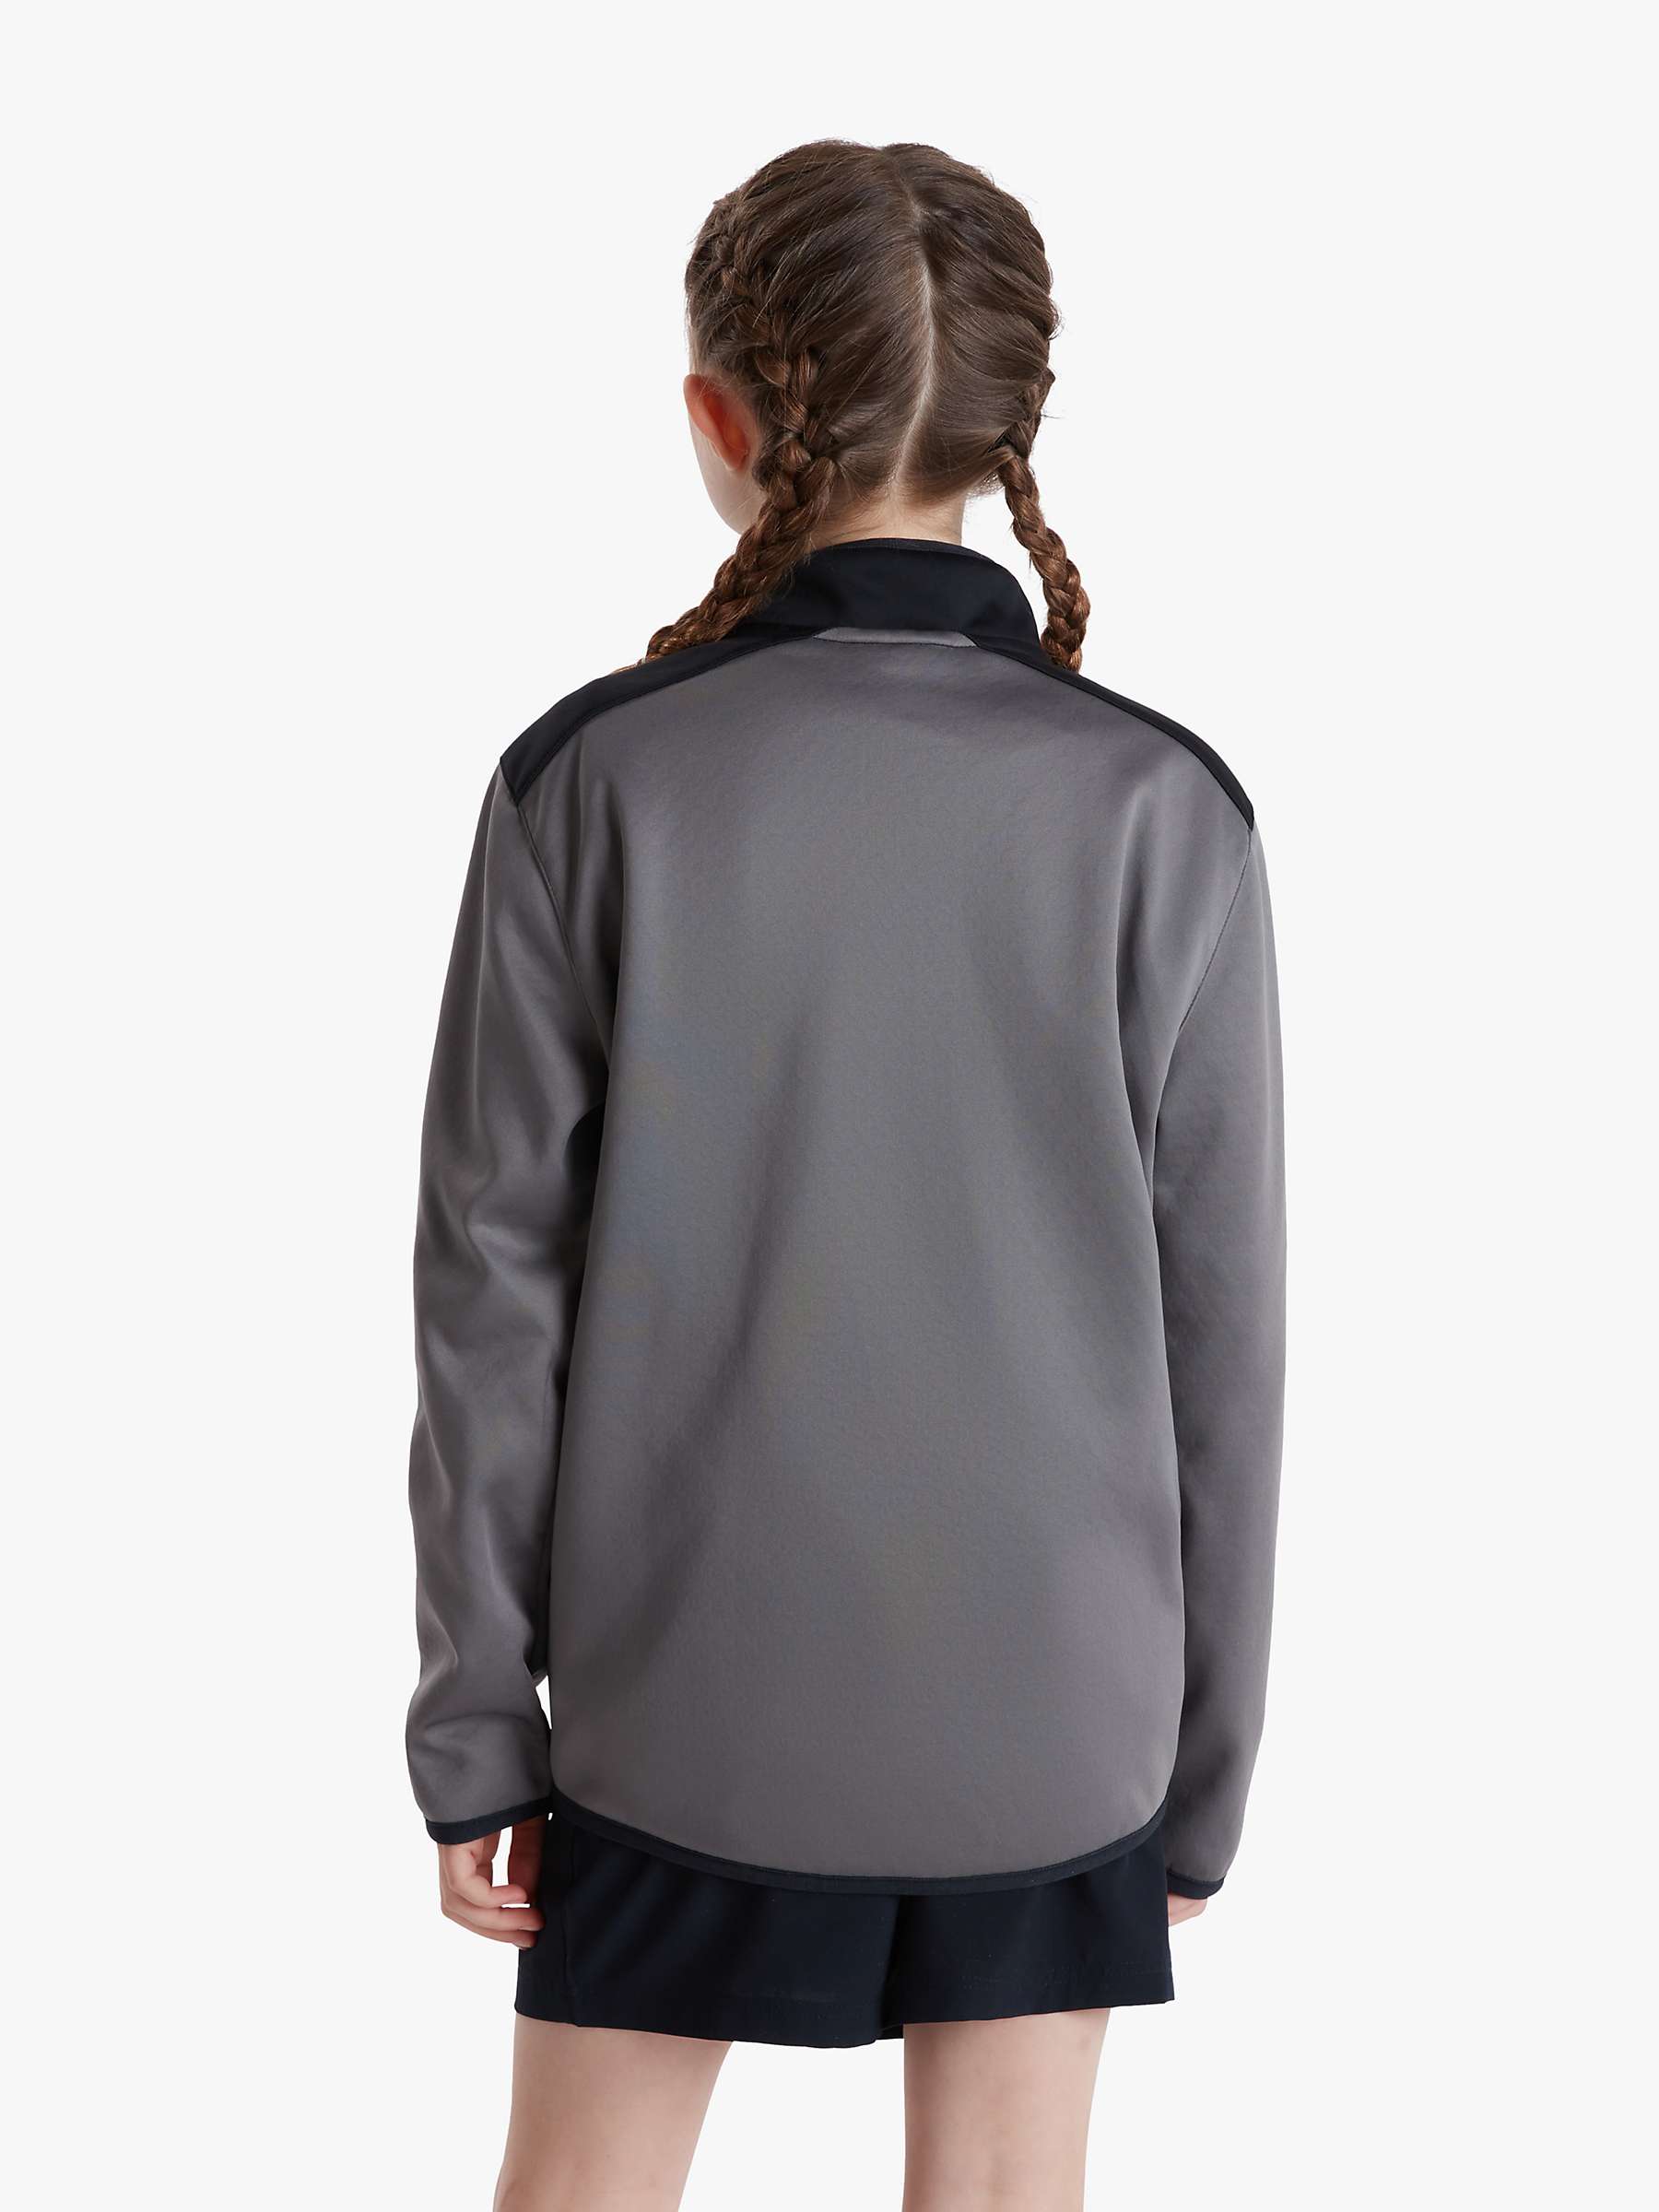 Buy Canterbury of New Zealand Kids' Quarter Zip Fleece, Grey Online at johnlewis.com